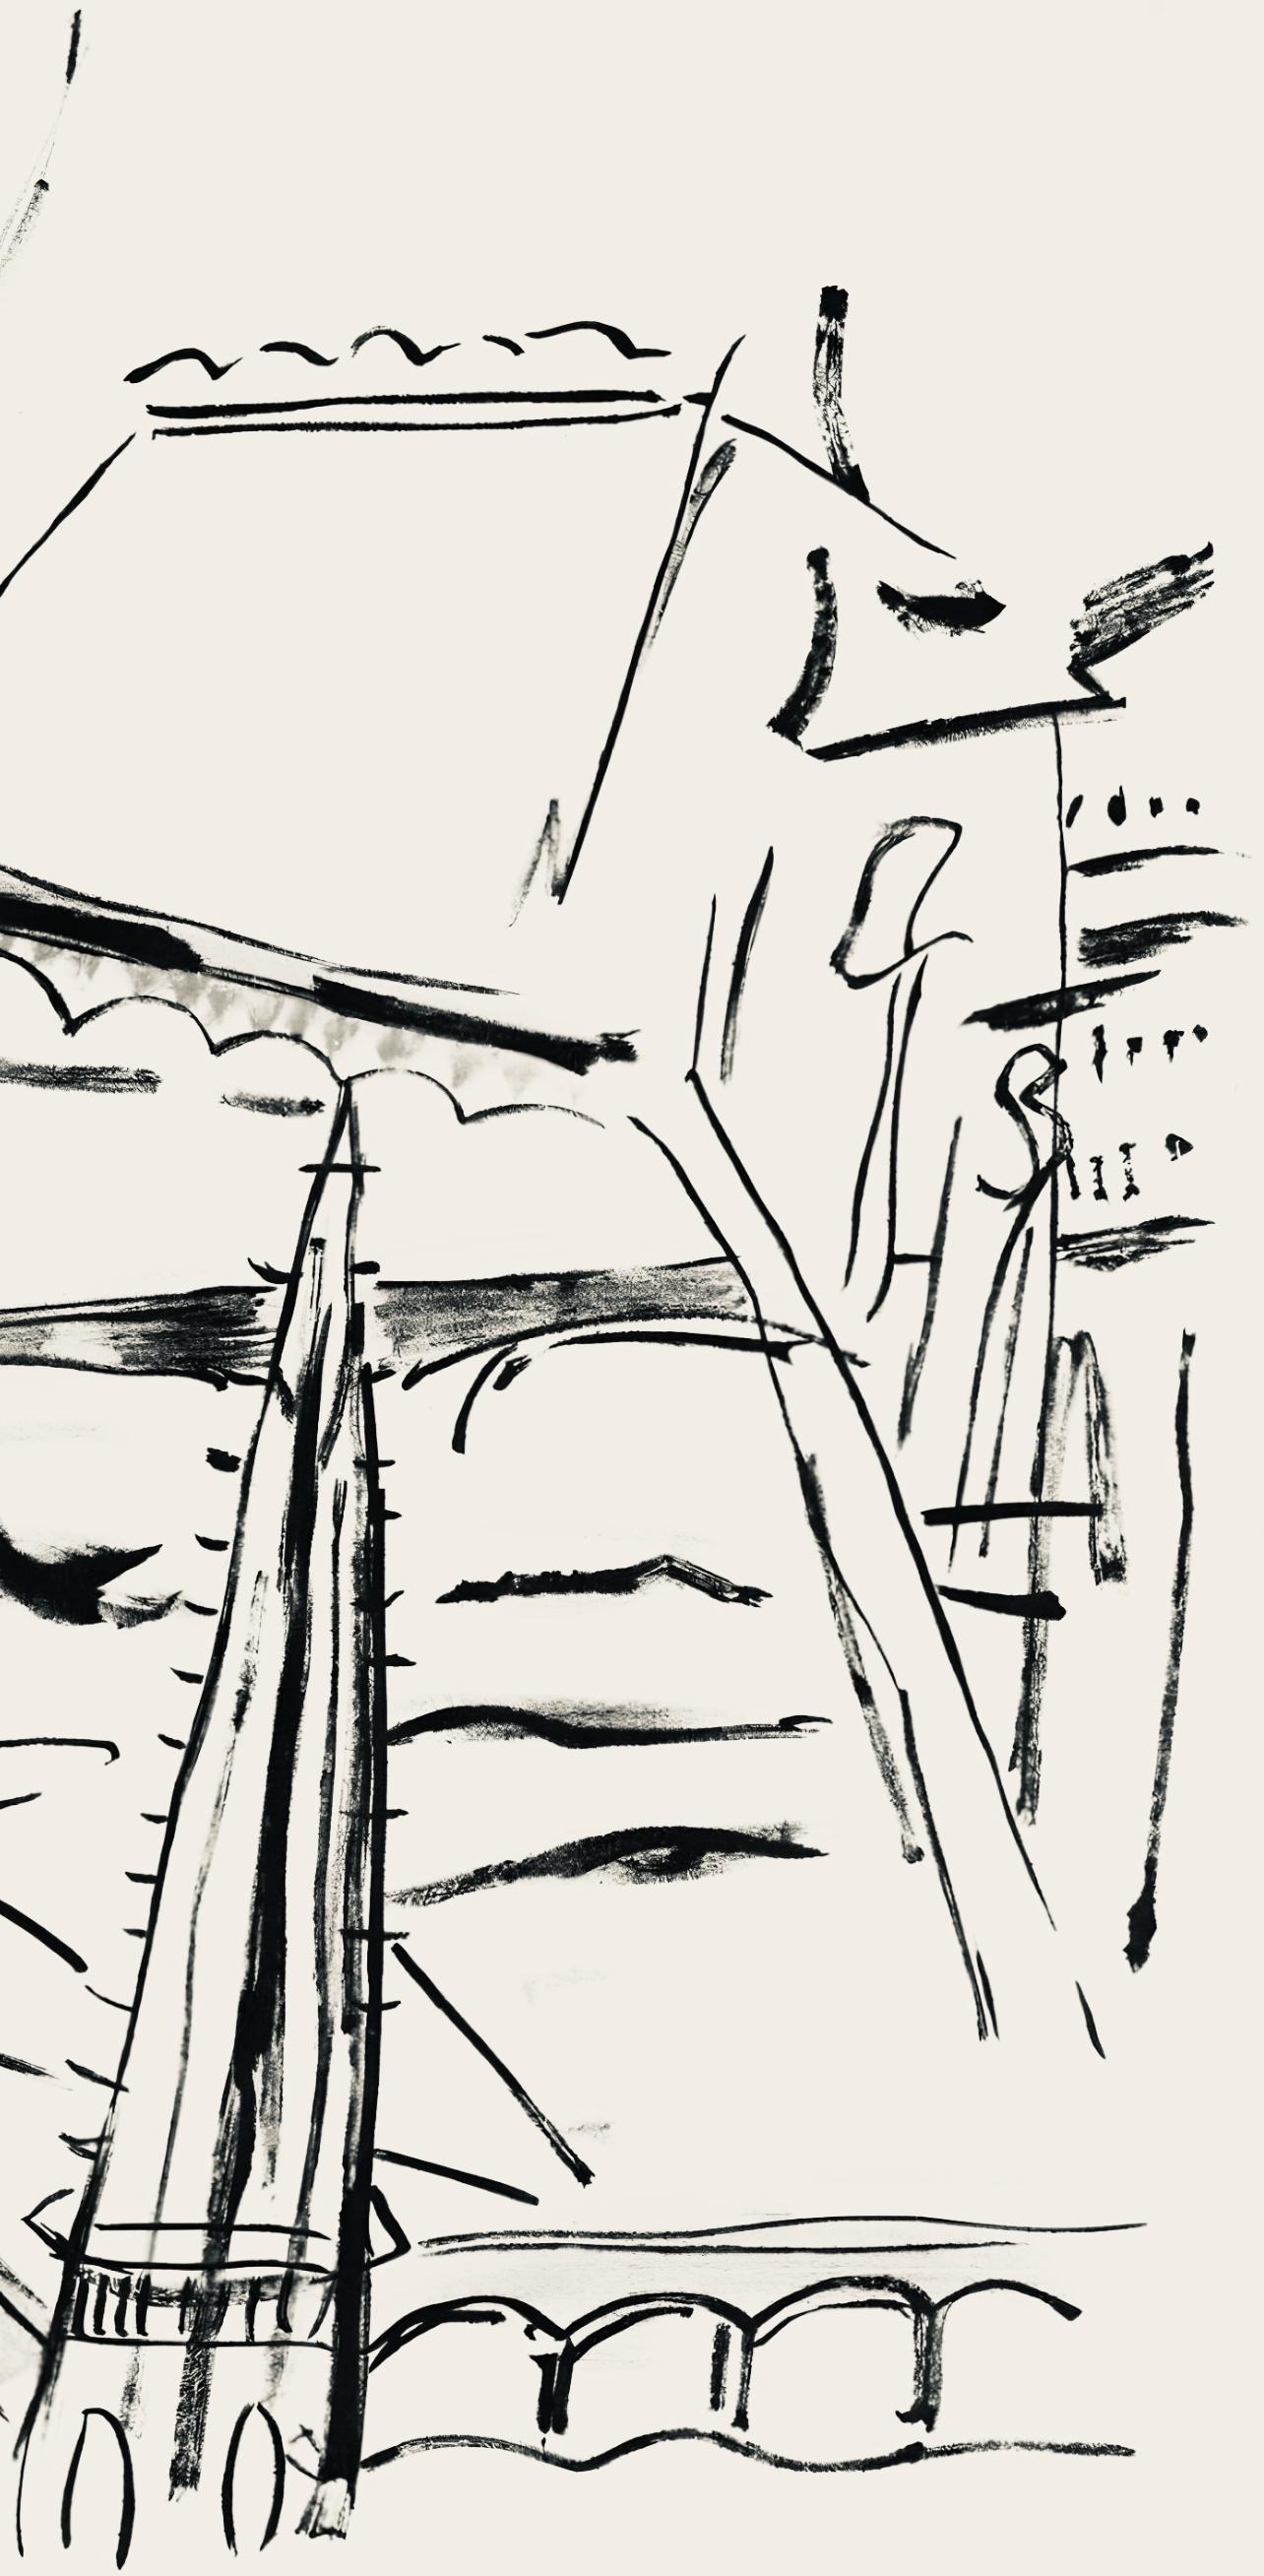 Lithograph on vélin bouffant des Papeteries de Hauteville paper. Unsigned and unnumbered, as issued. Good condition. Notes: From the folio, Fernand Léger mes voyages avec un poème d'aragon et des lithographies de l’auteur, 1970. Published by